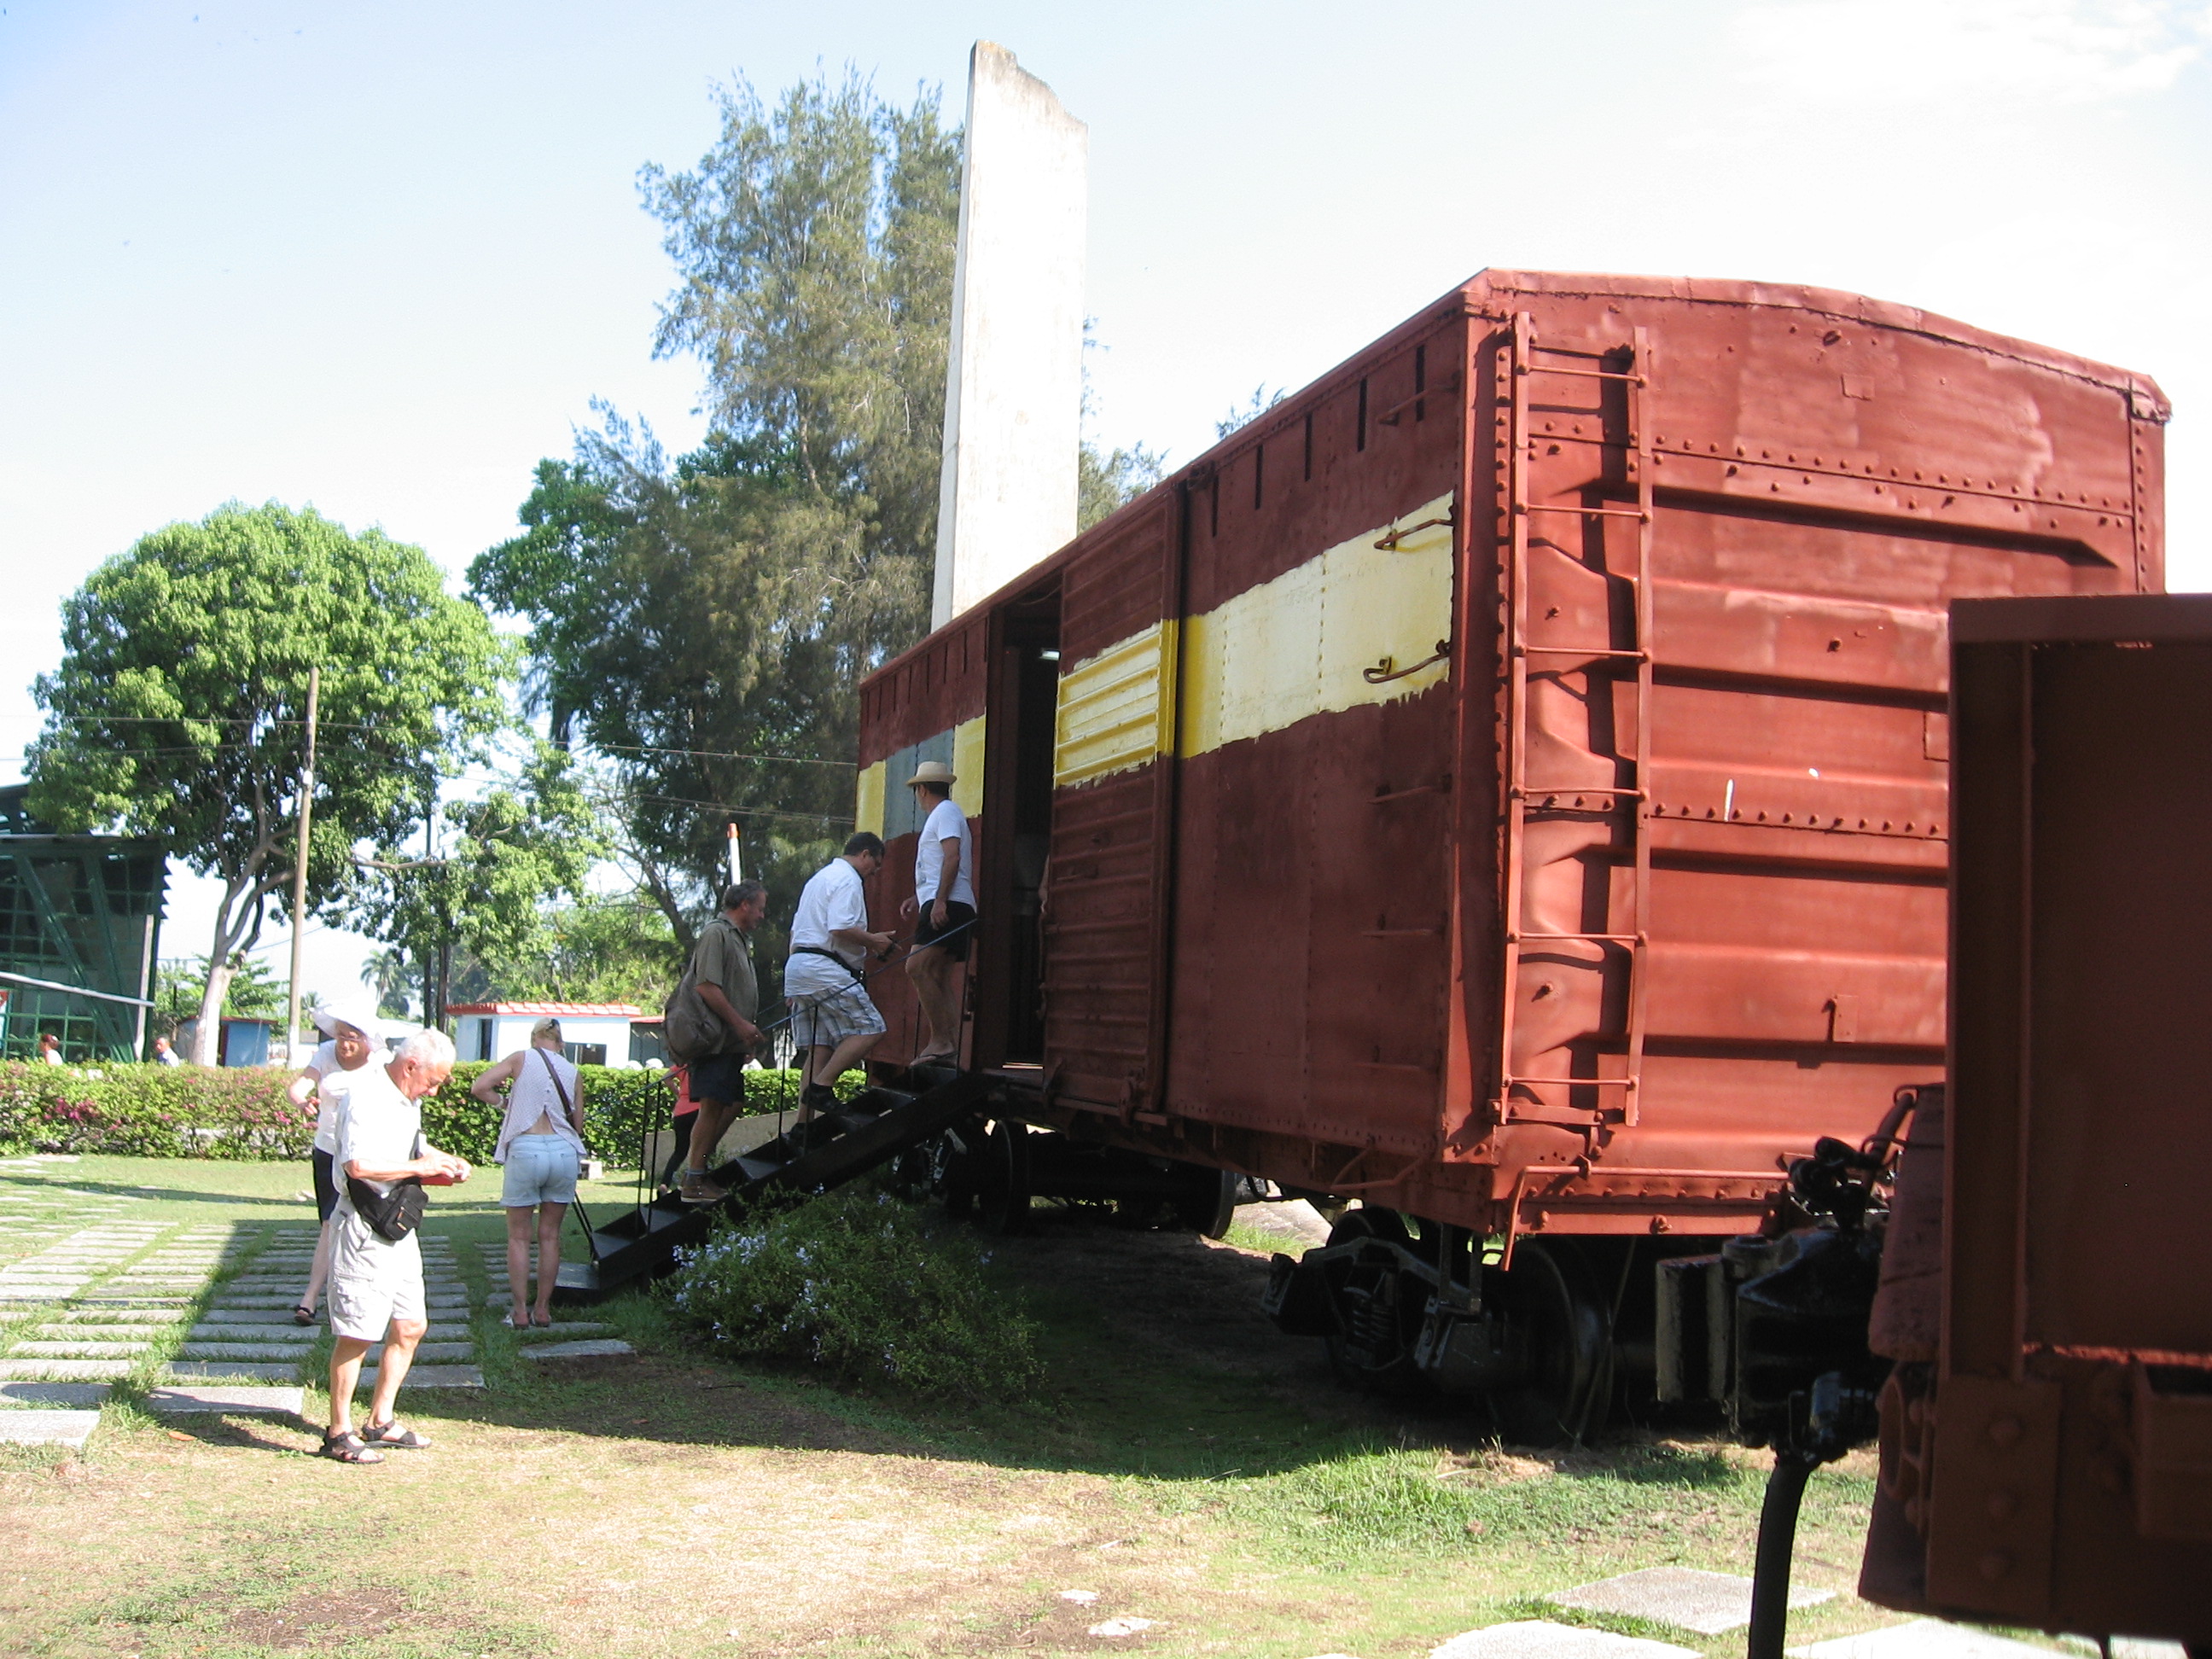 Le wagon blindé pris par Che Guevara et ses compagnons à Santa Clara ( épisode de la révolution cubaine 